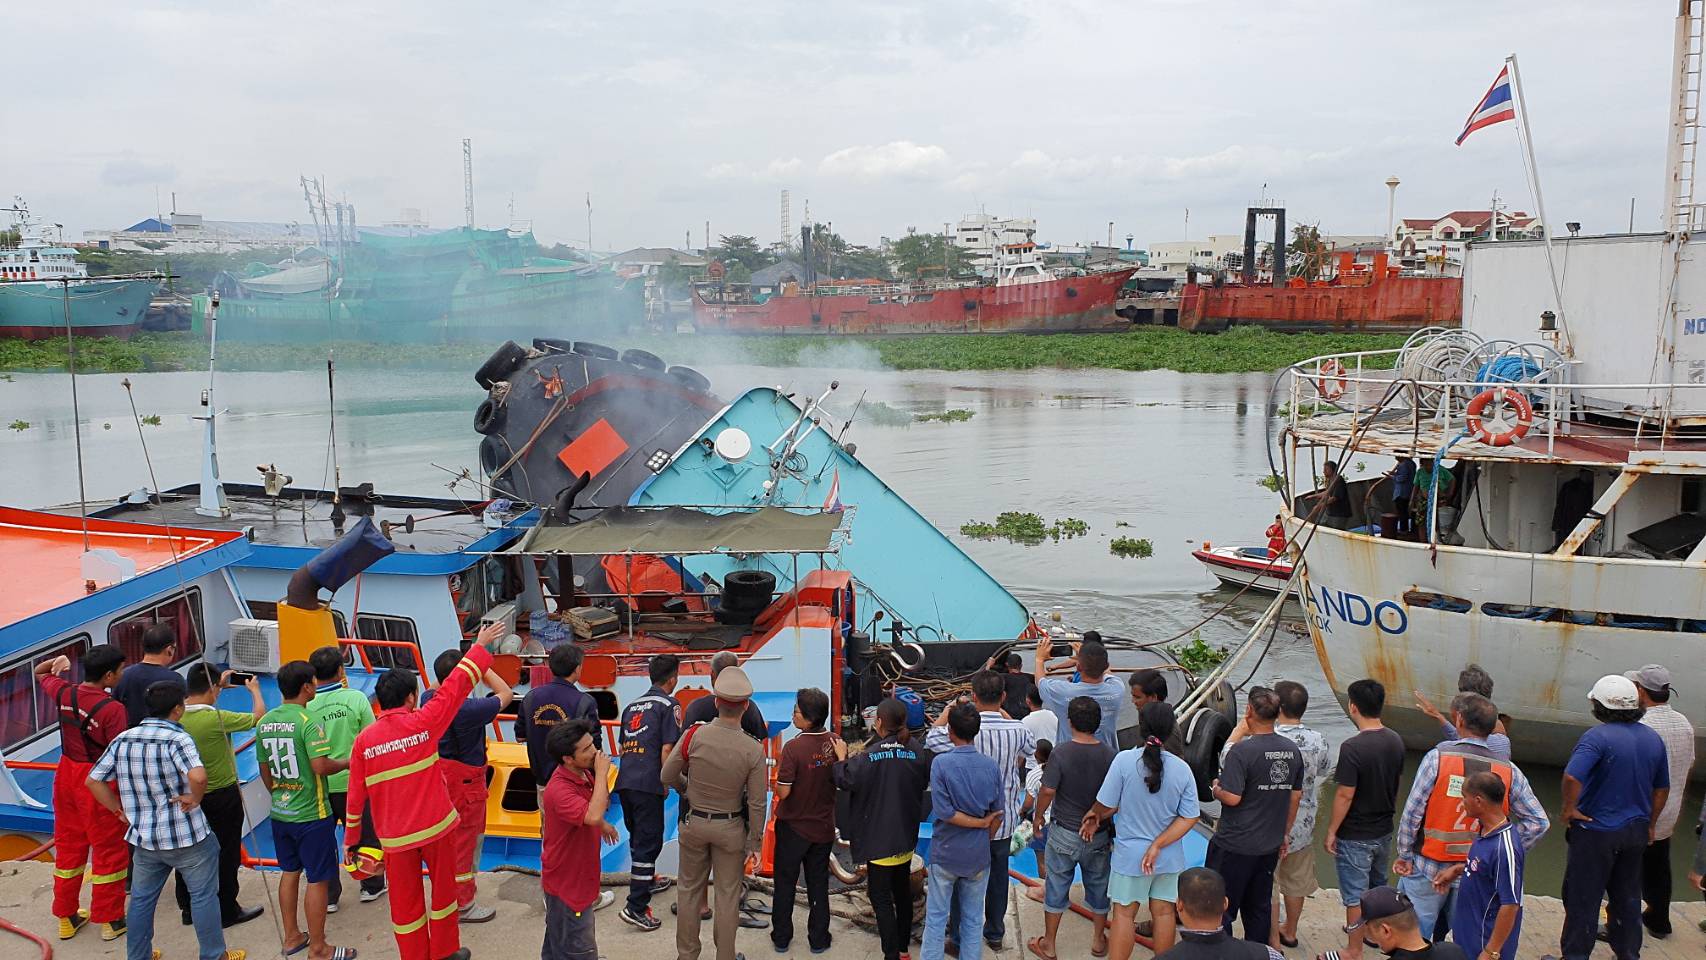 เกิดเหตุอุปกรณ์ในเรือลากจูงระเบิดขณะจอดรอเรือแม่ จนไฟลุกท่วมก่อนจะจมลงก้นแม่น้ำท่าจีน ต่อหน้าคนนับร้อย